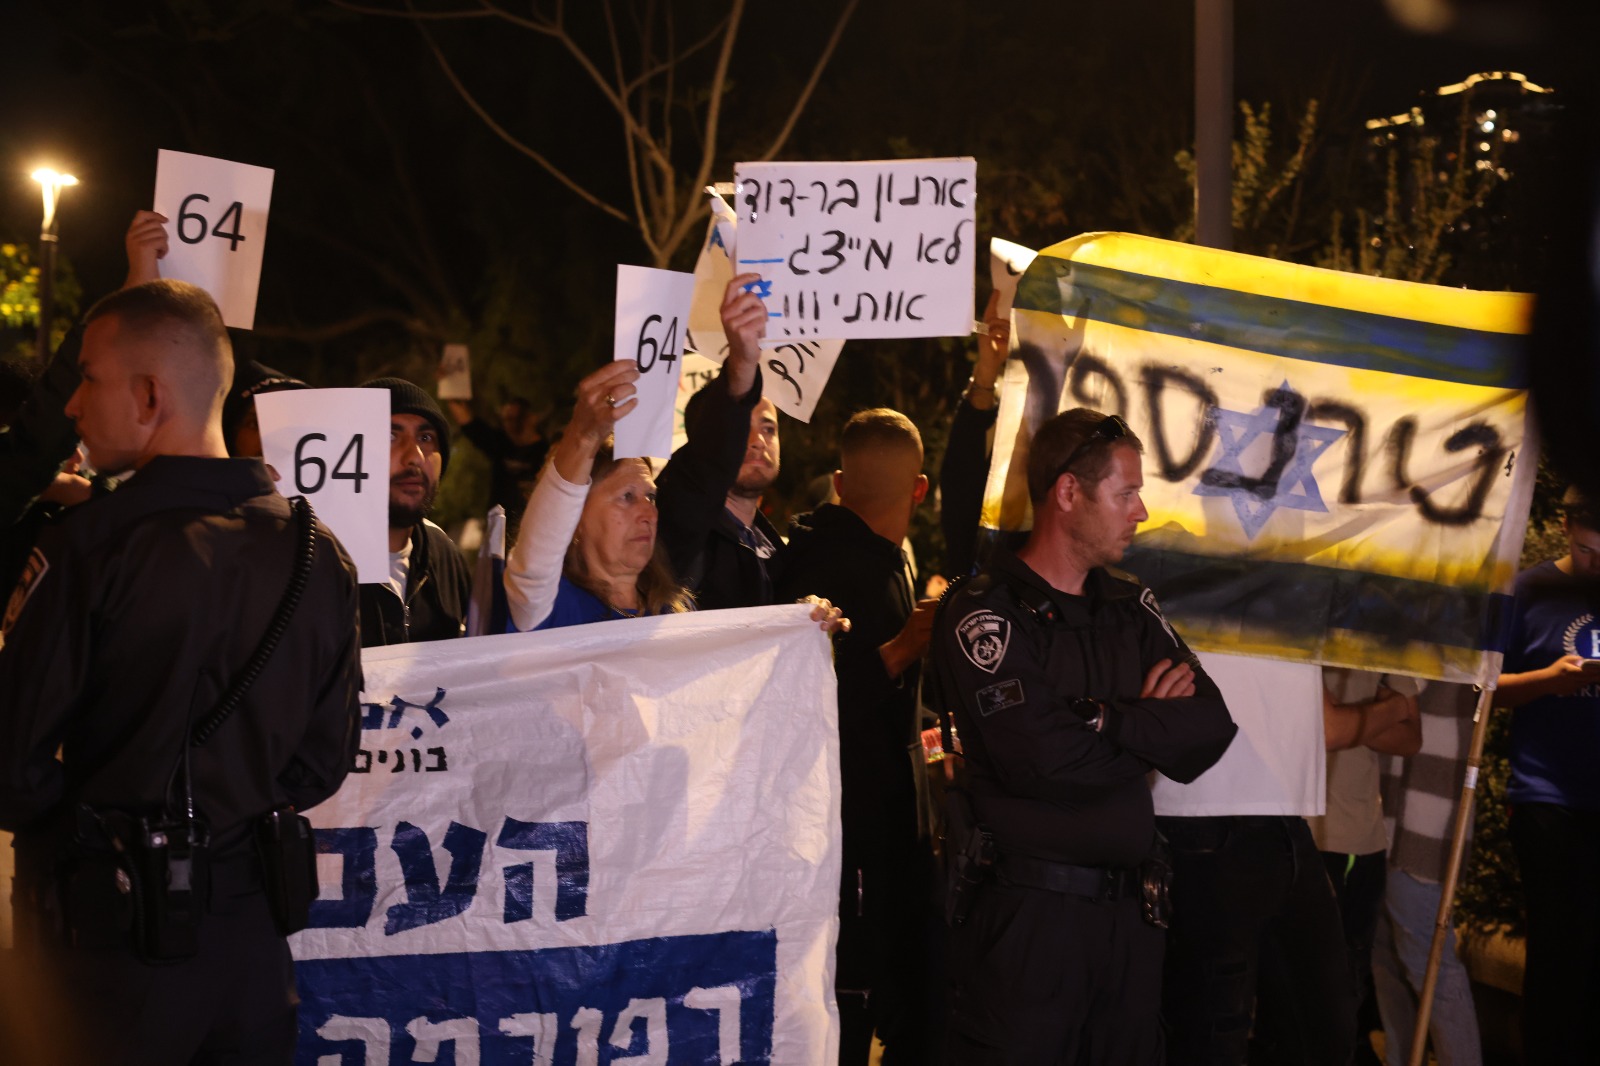 המענה הימנית לדגל של המחאה נגד ההפיכה המשטרית. דגל עם המלה "טרנספר" בהפגנת ימין בתל אביב, 27.3.23 (צילום: אורן זיו)